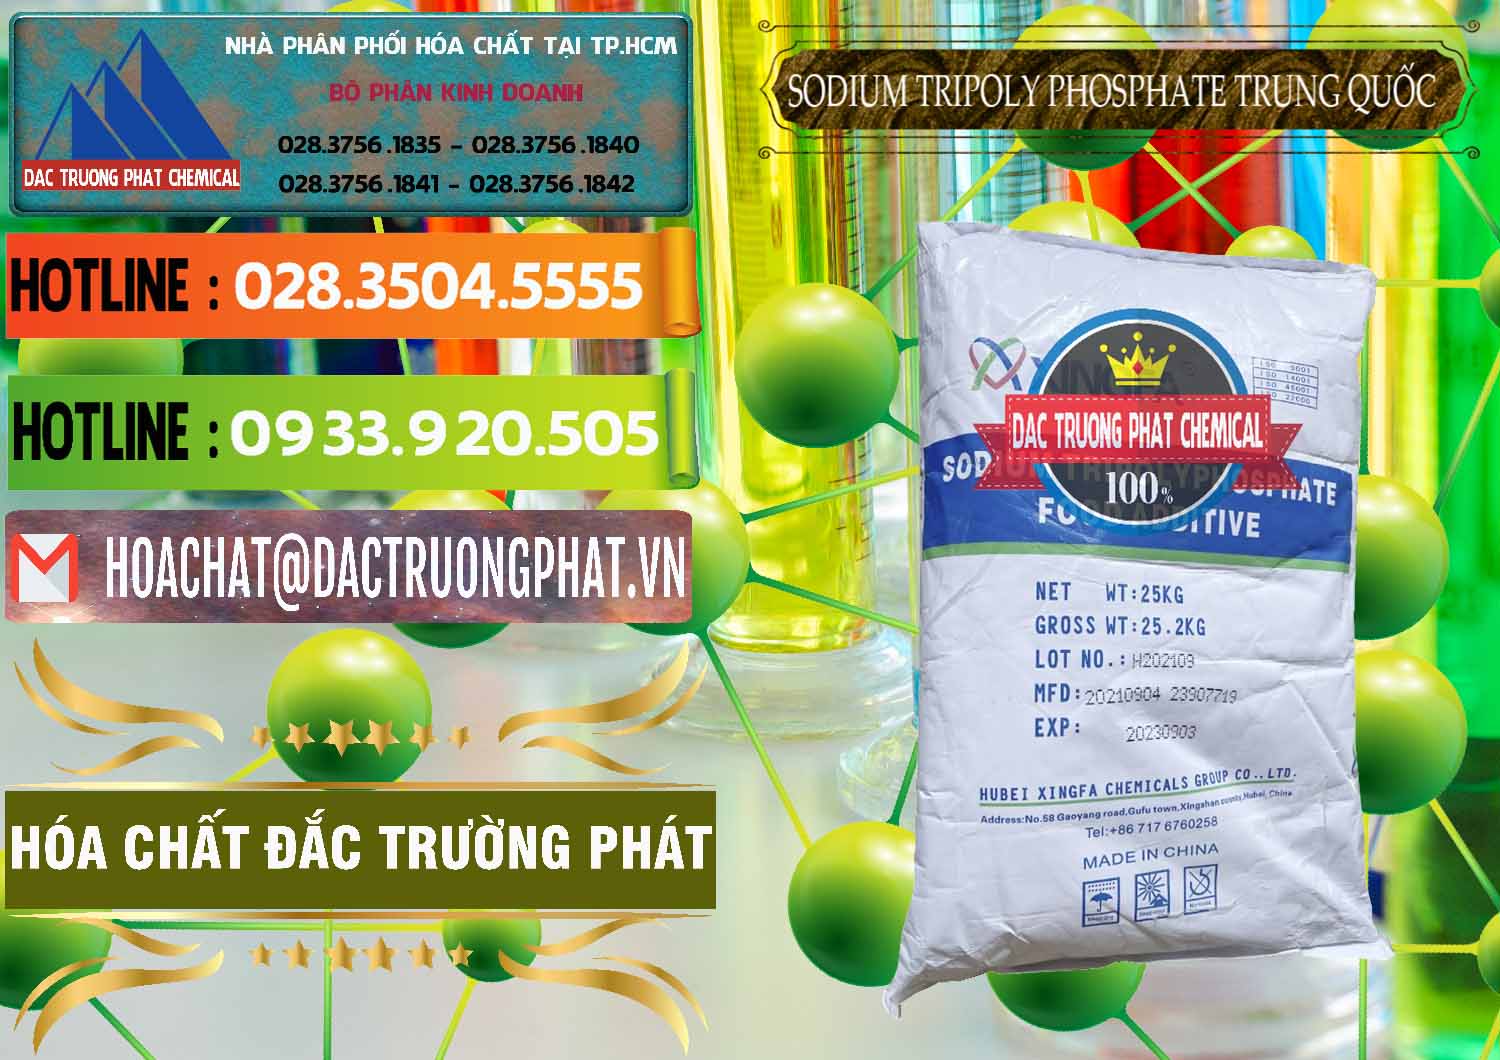 Cty chuyên bán & cung ứng Sodium Tripoly Phosphate - STPP 96% Xingfa Trung Quốc China - 0433 - Chuyên cung cấp _ phân phối hóa chất tại TP.HCM - cungcaphoachat.com.vn